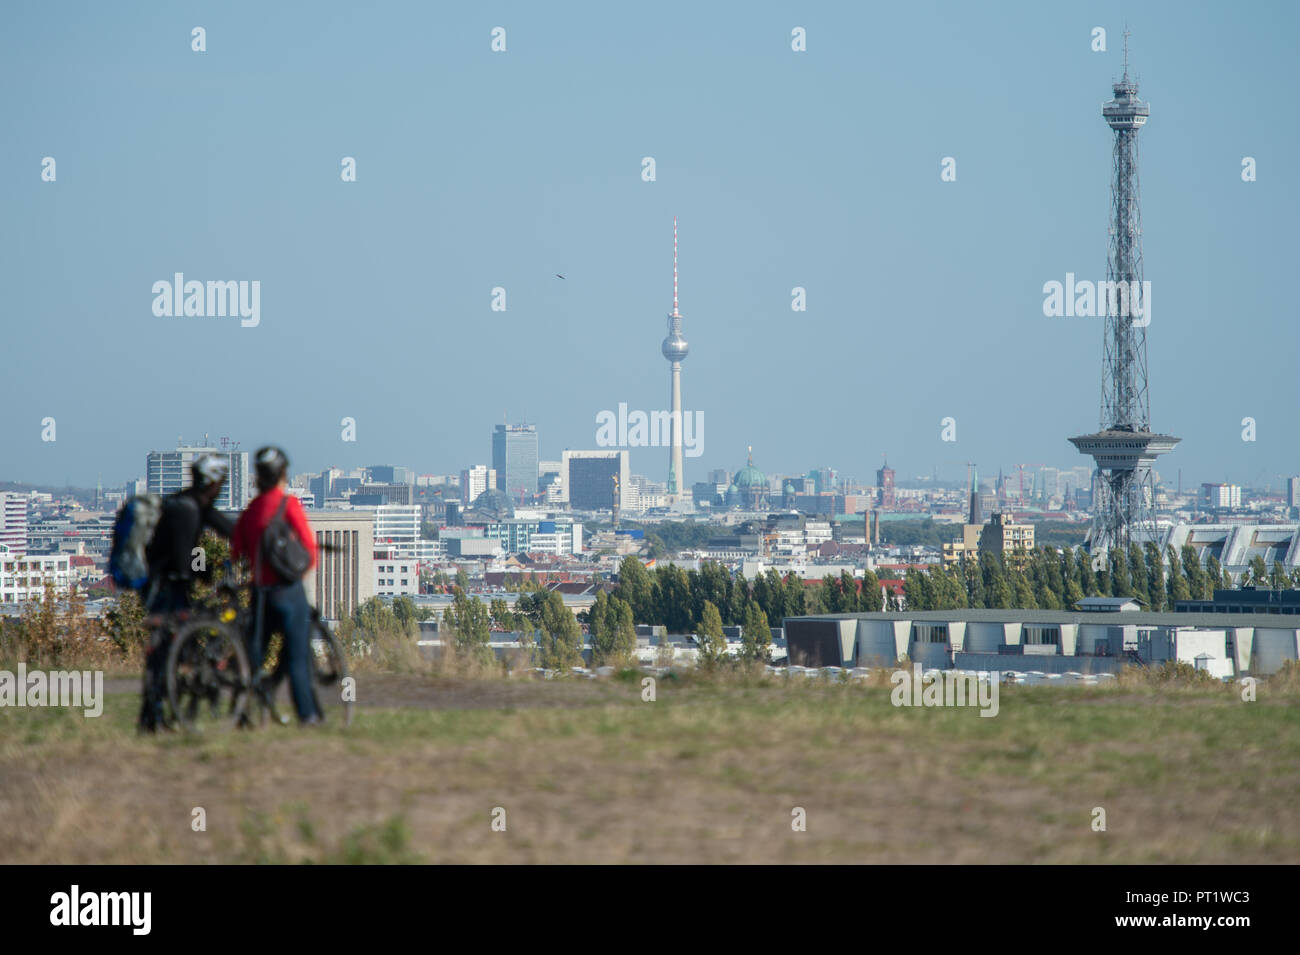 05 Oktober 2018, Berlin: Zwei Radfahrer in der Berliner City Panorama mit den Fernsehturm und Radio Tower in der Ferne suchen. Foto: Arne Immanuel Bänsch/dpa Stockfoto